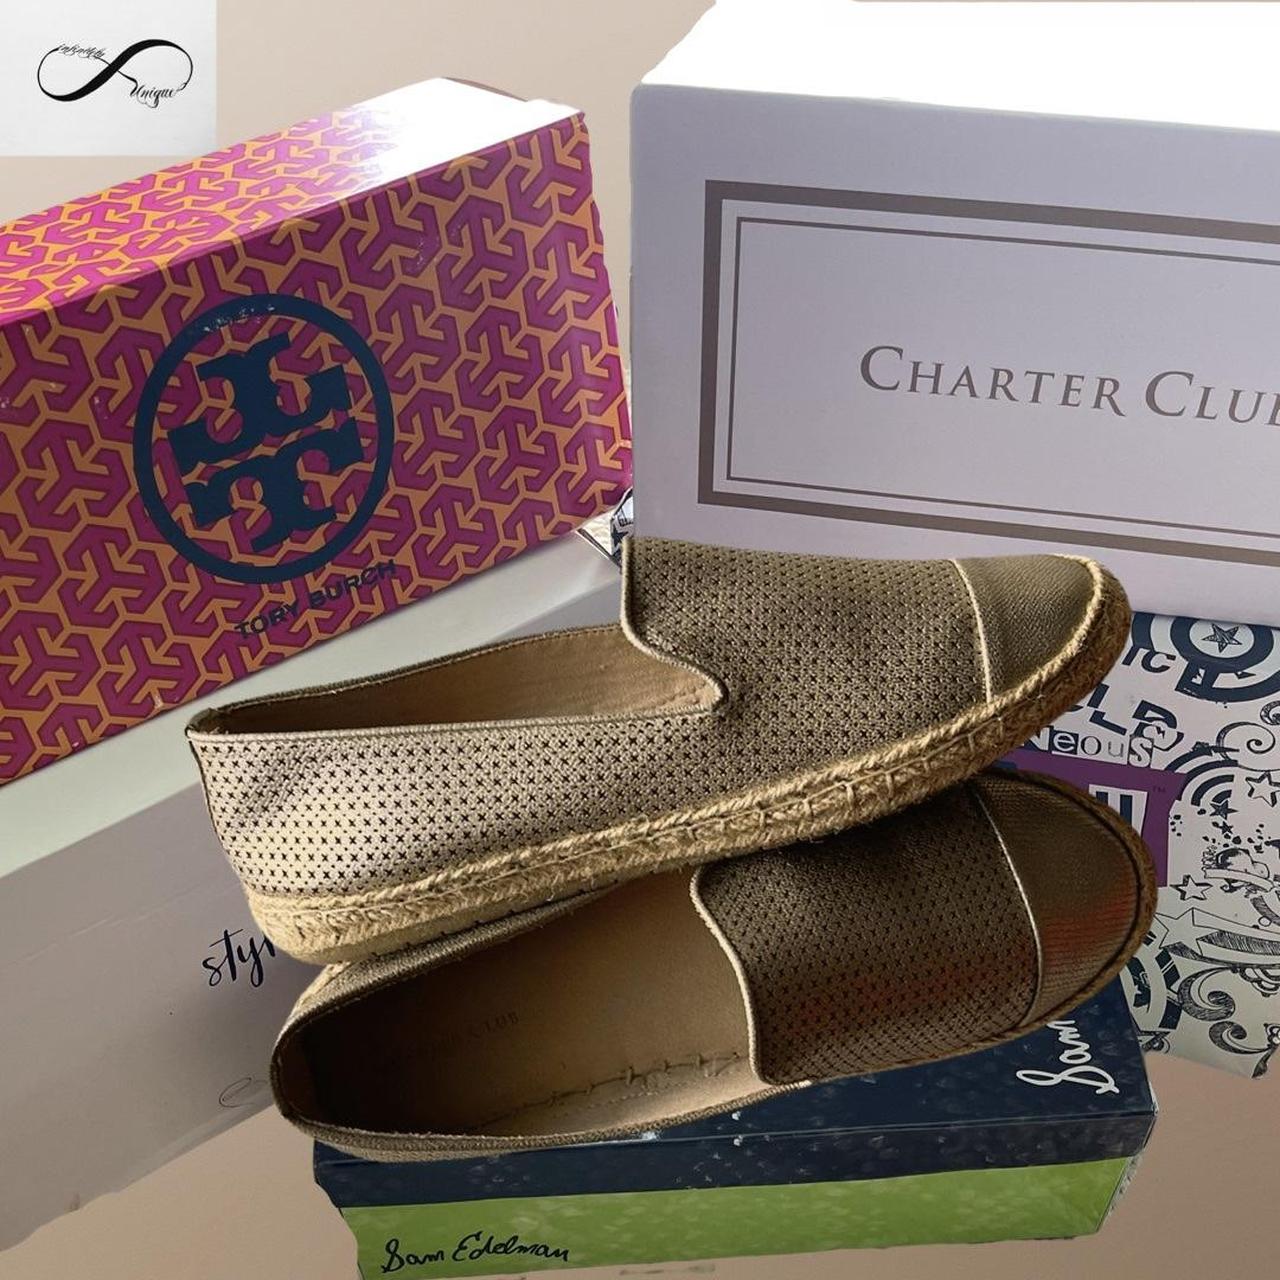 Charter Club Women's Footwear (3)